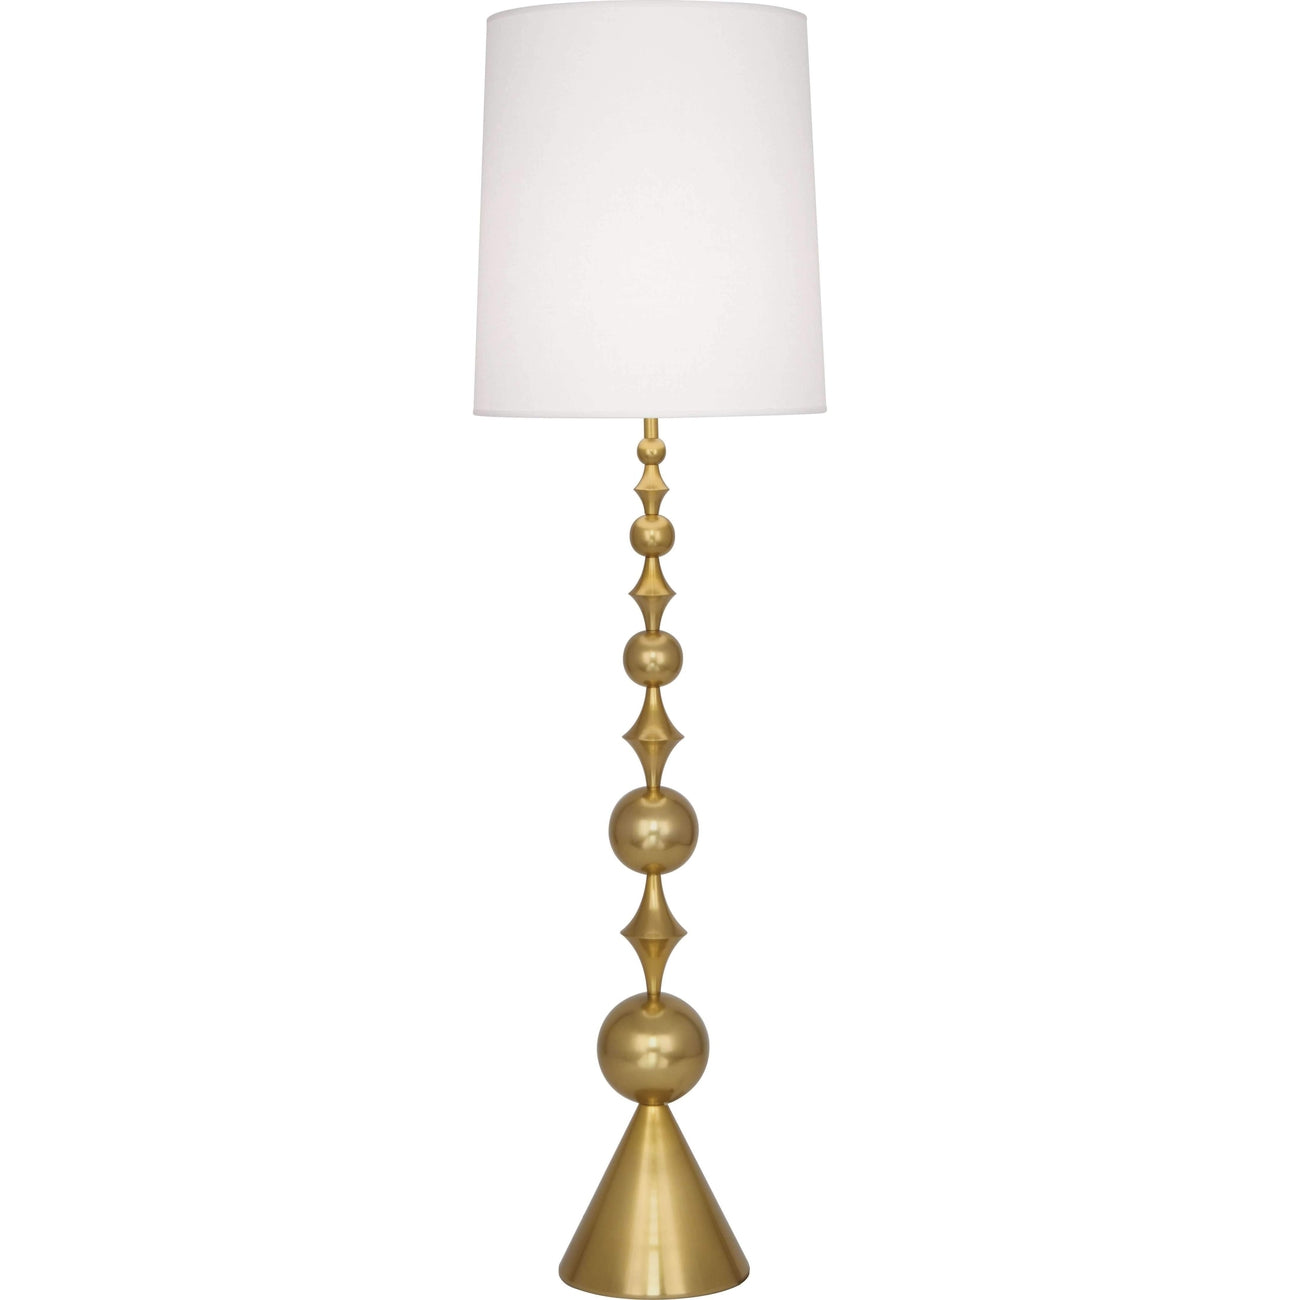 Jonathan Adler Harlequin Floor Lamp-Robert Abbey Fine Lighting-ABBEY-787-Floor LampsAntique Brass-1-France and Son